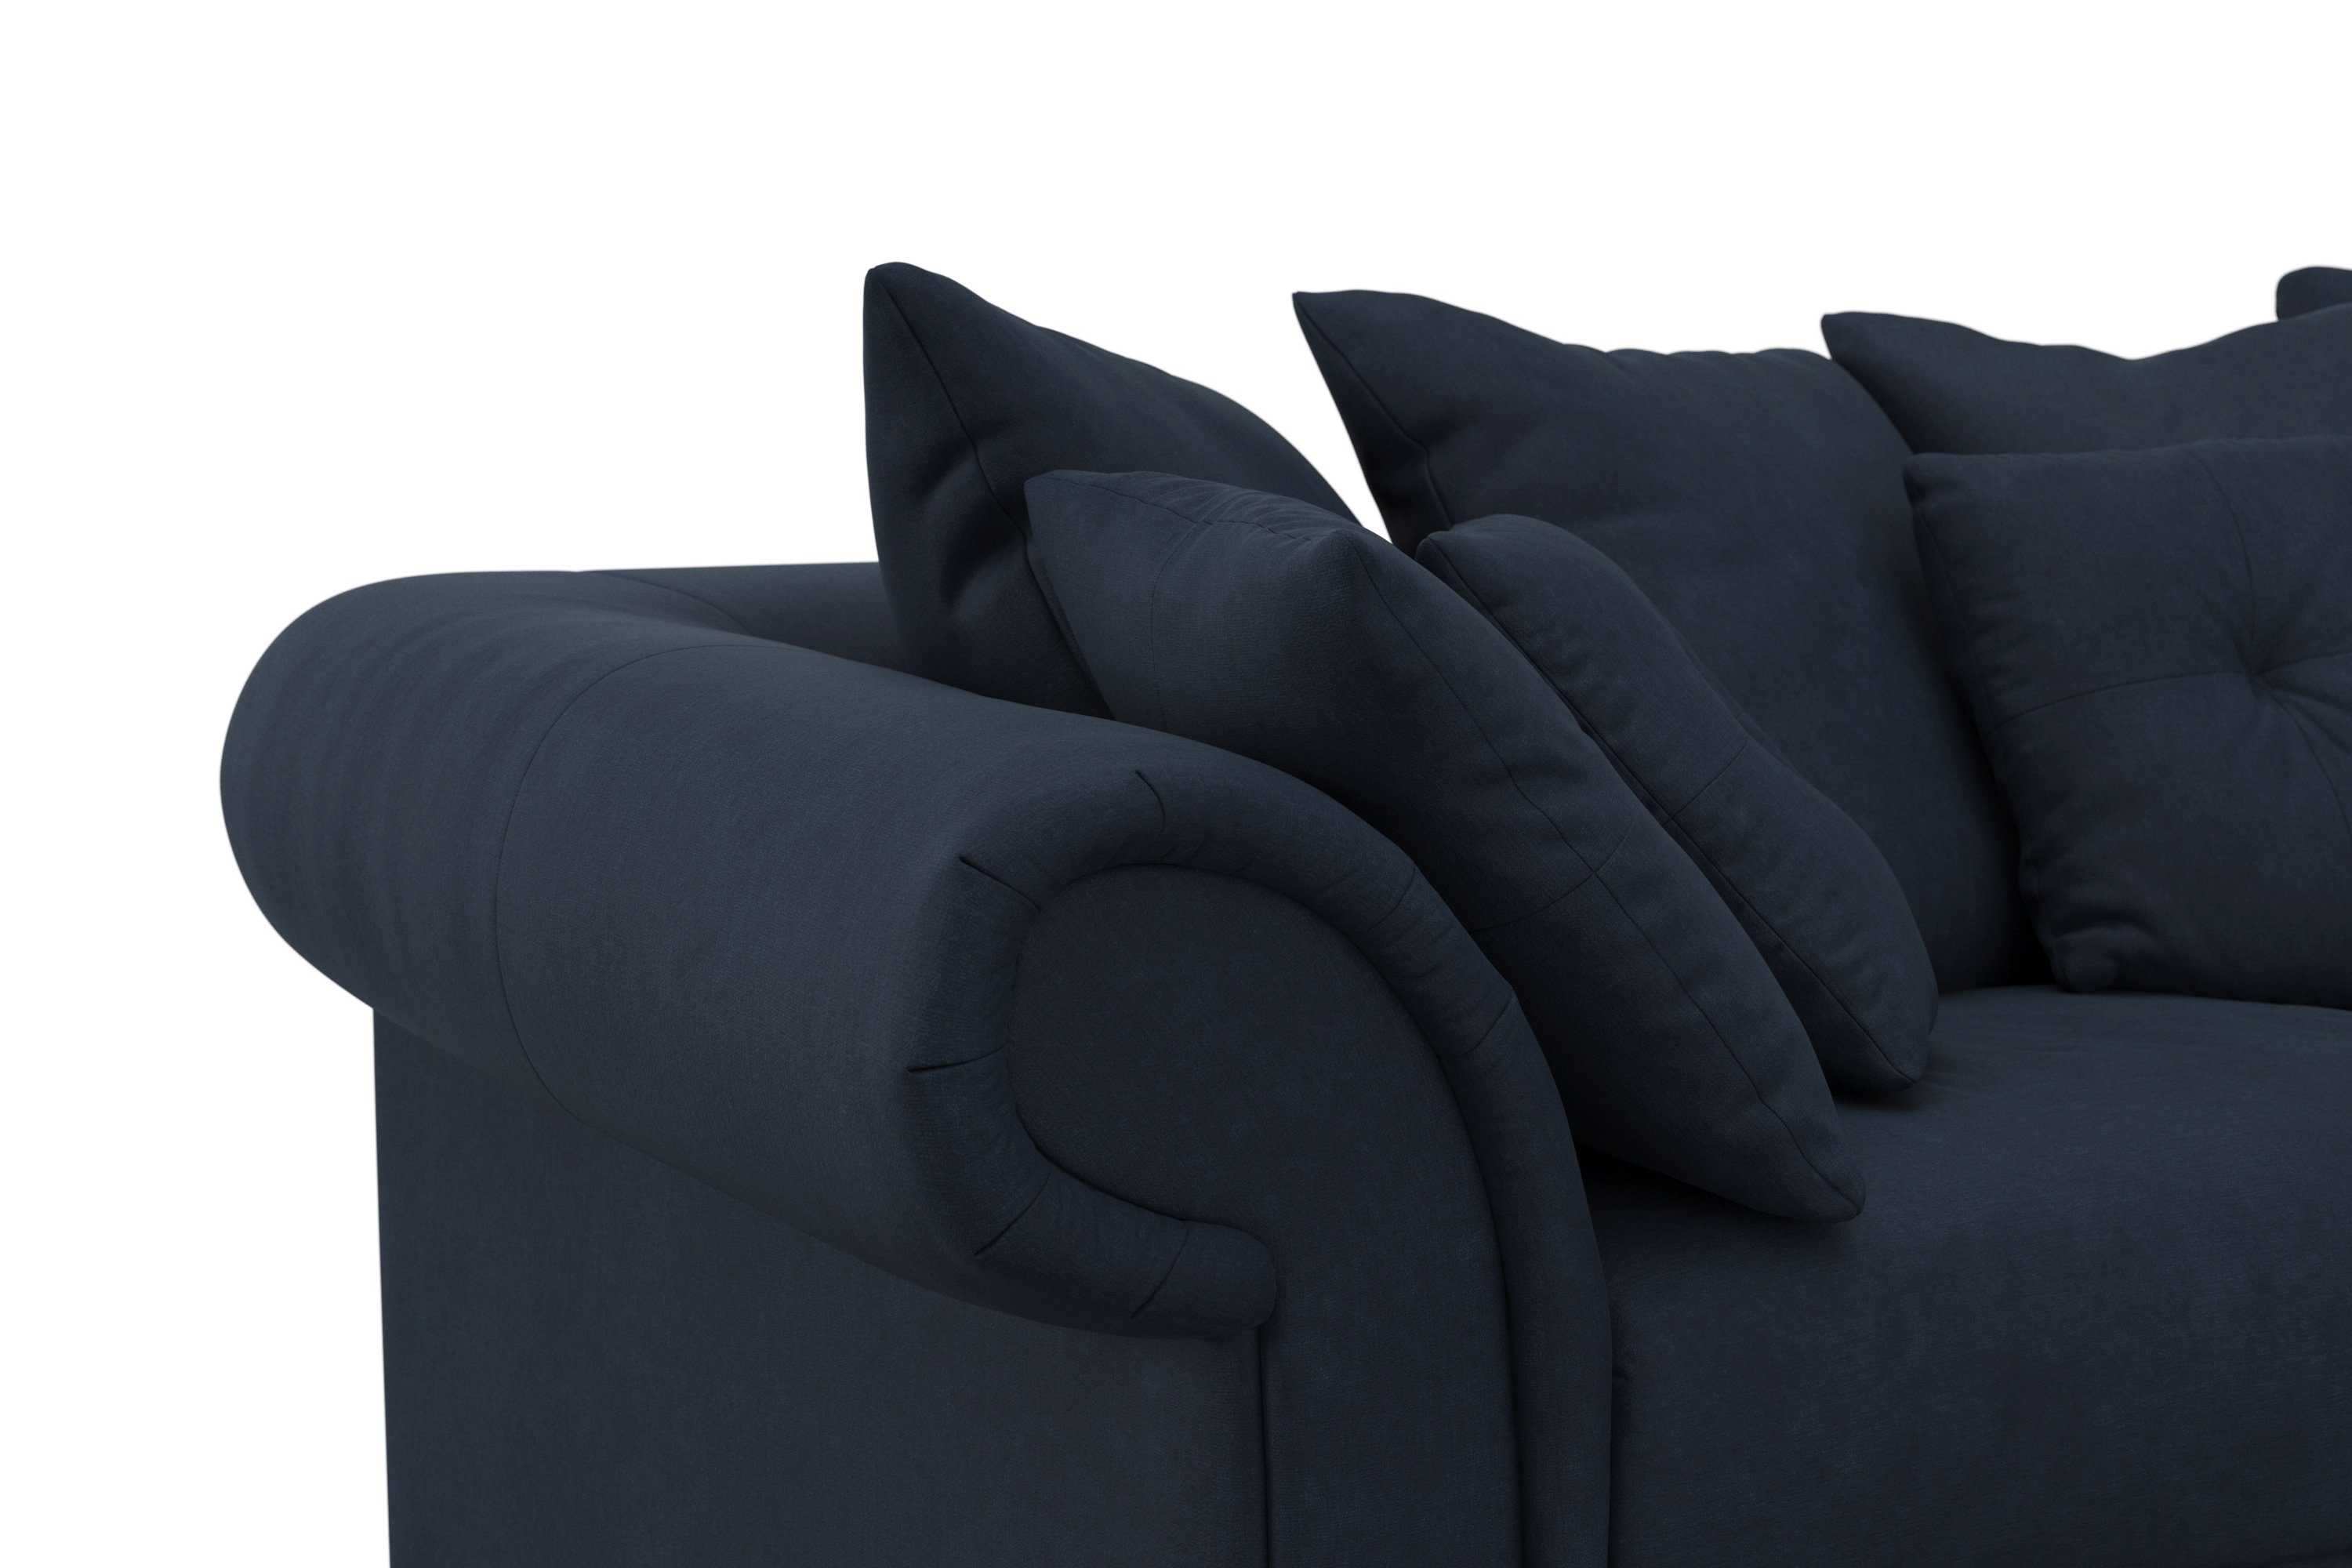 Home affaire Big-Sofa Queenie Megasofa, Design, 2 zeitlosem mit weichem und Sitzkomfort Kissen viele Teile, kuschelige